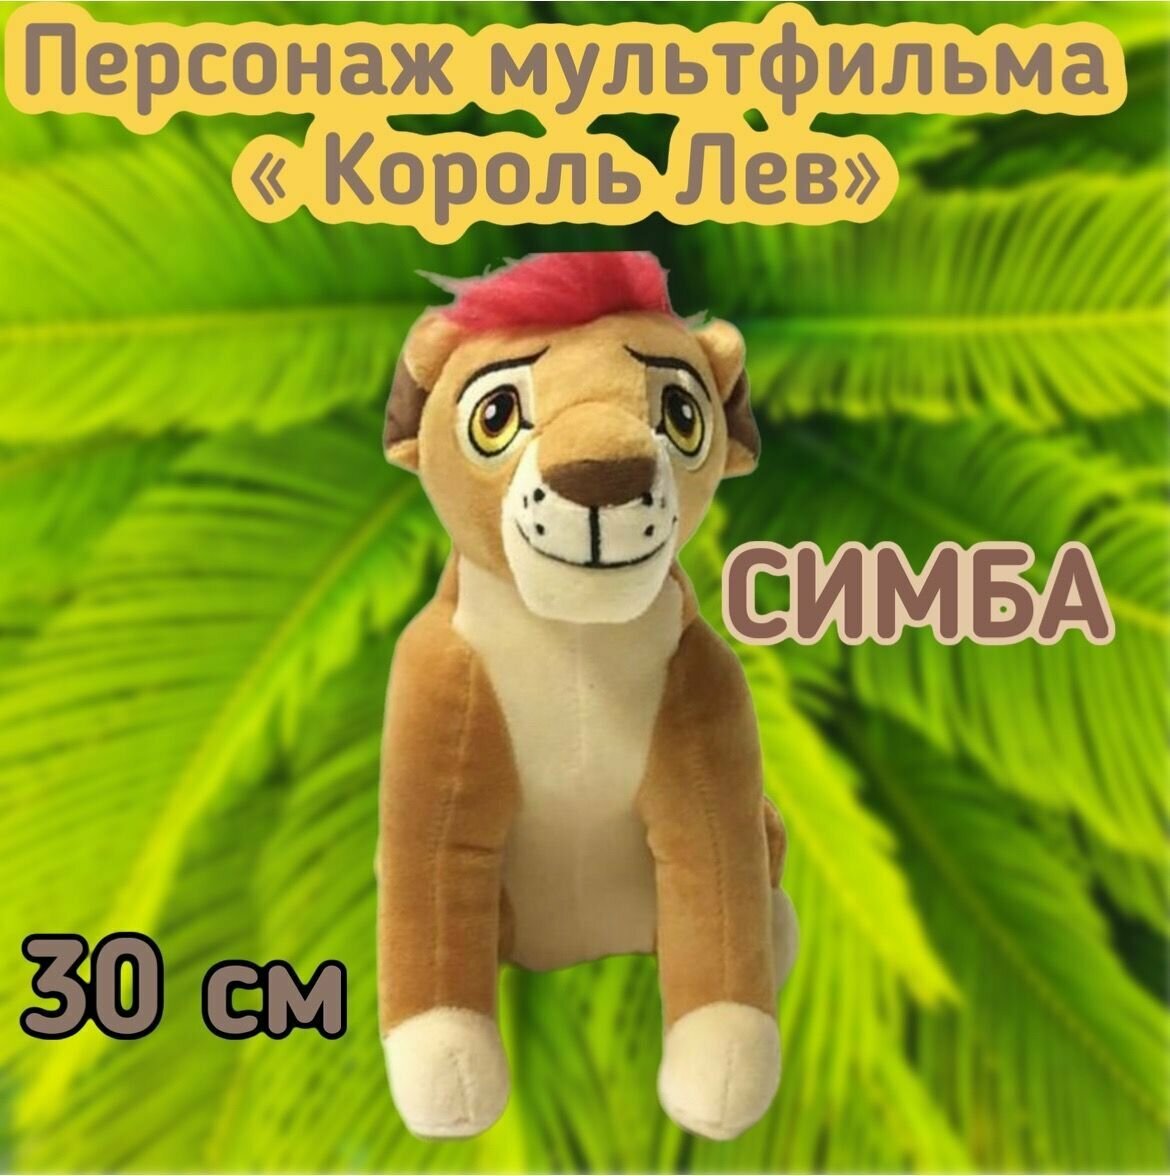 Мягкая игрушка львенок Симба персонаж из мультфильма "Король Лев"/30 см